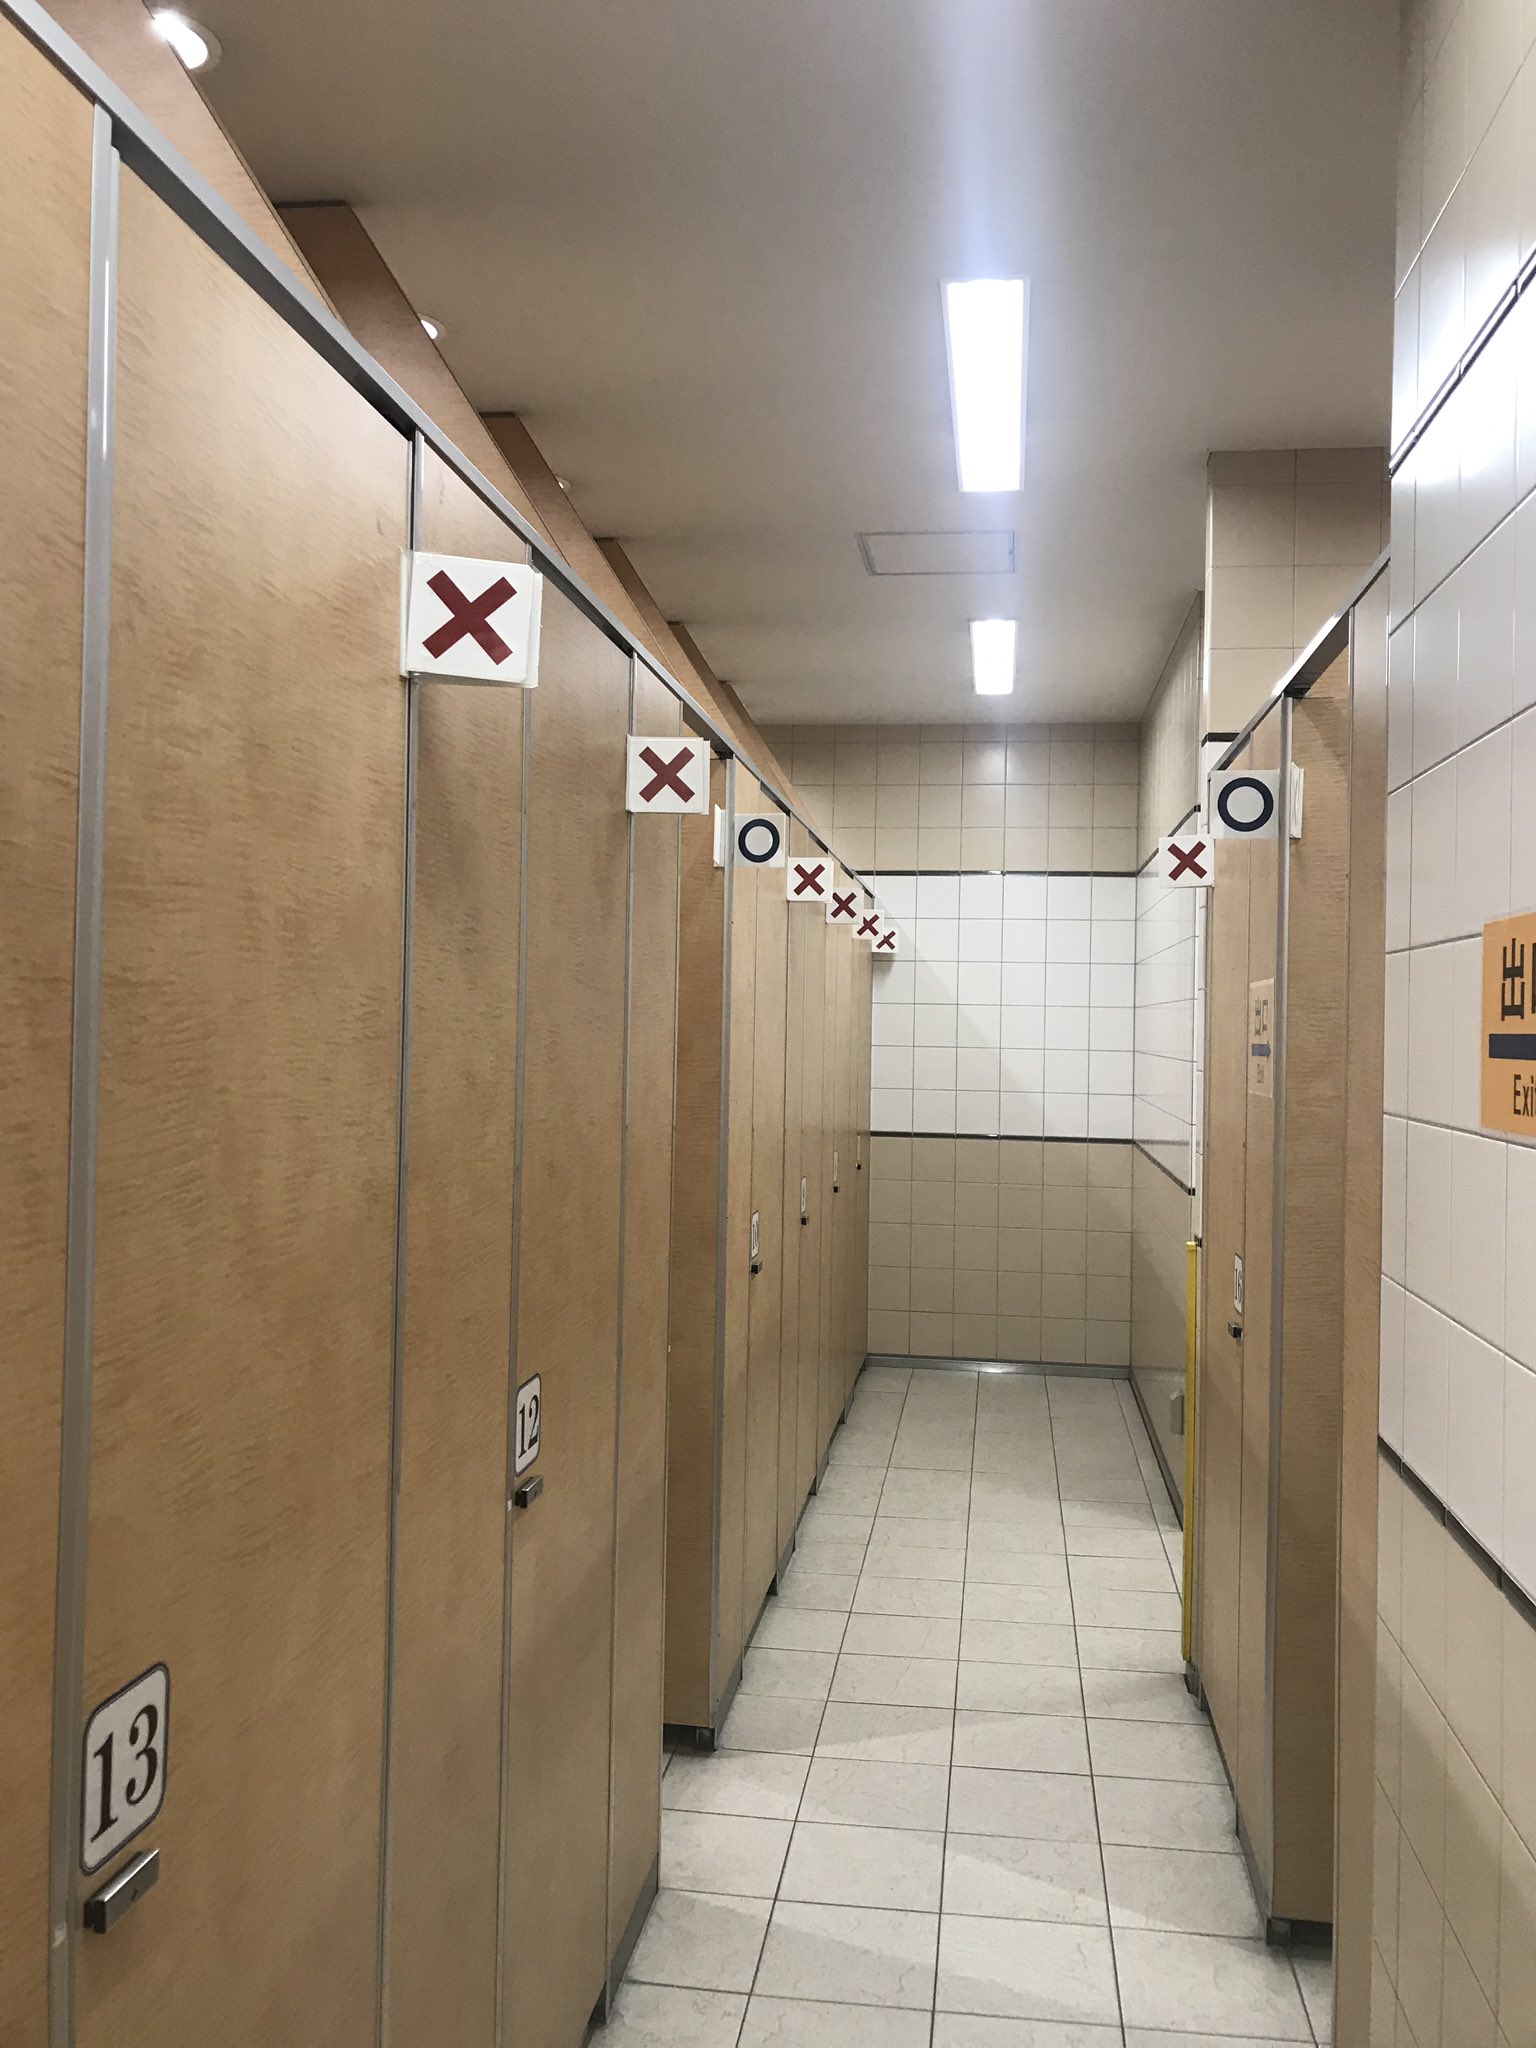 【○✗】京都駅のトイレのシステムが画期的過ぎる。アナログだけどわかりやすい！